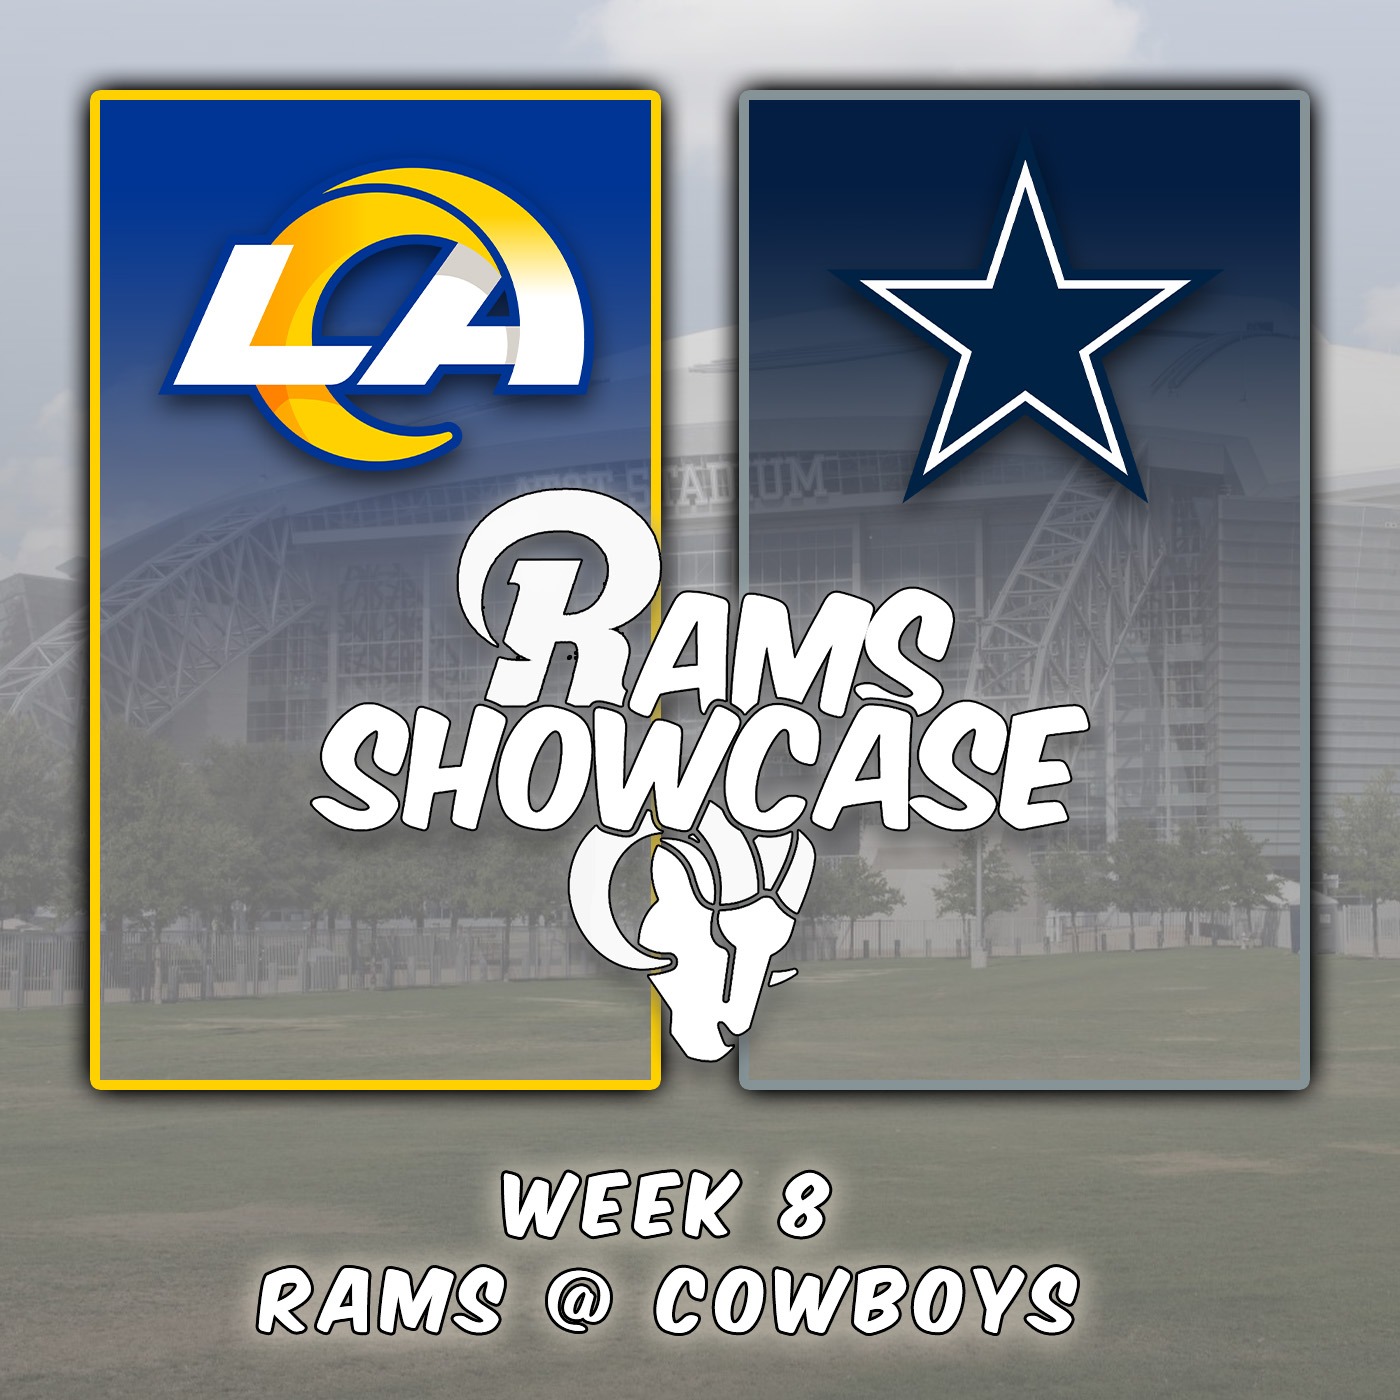 Week 8 | Rams @ Cowboys